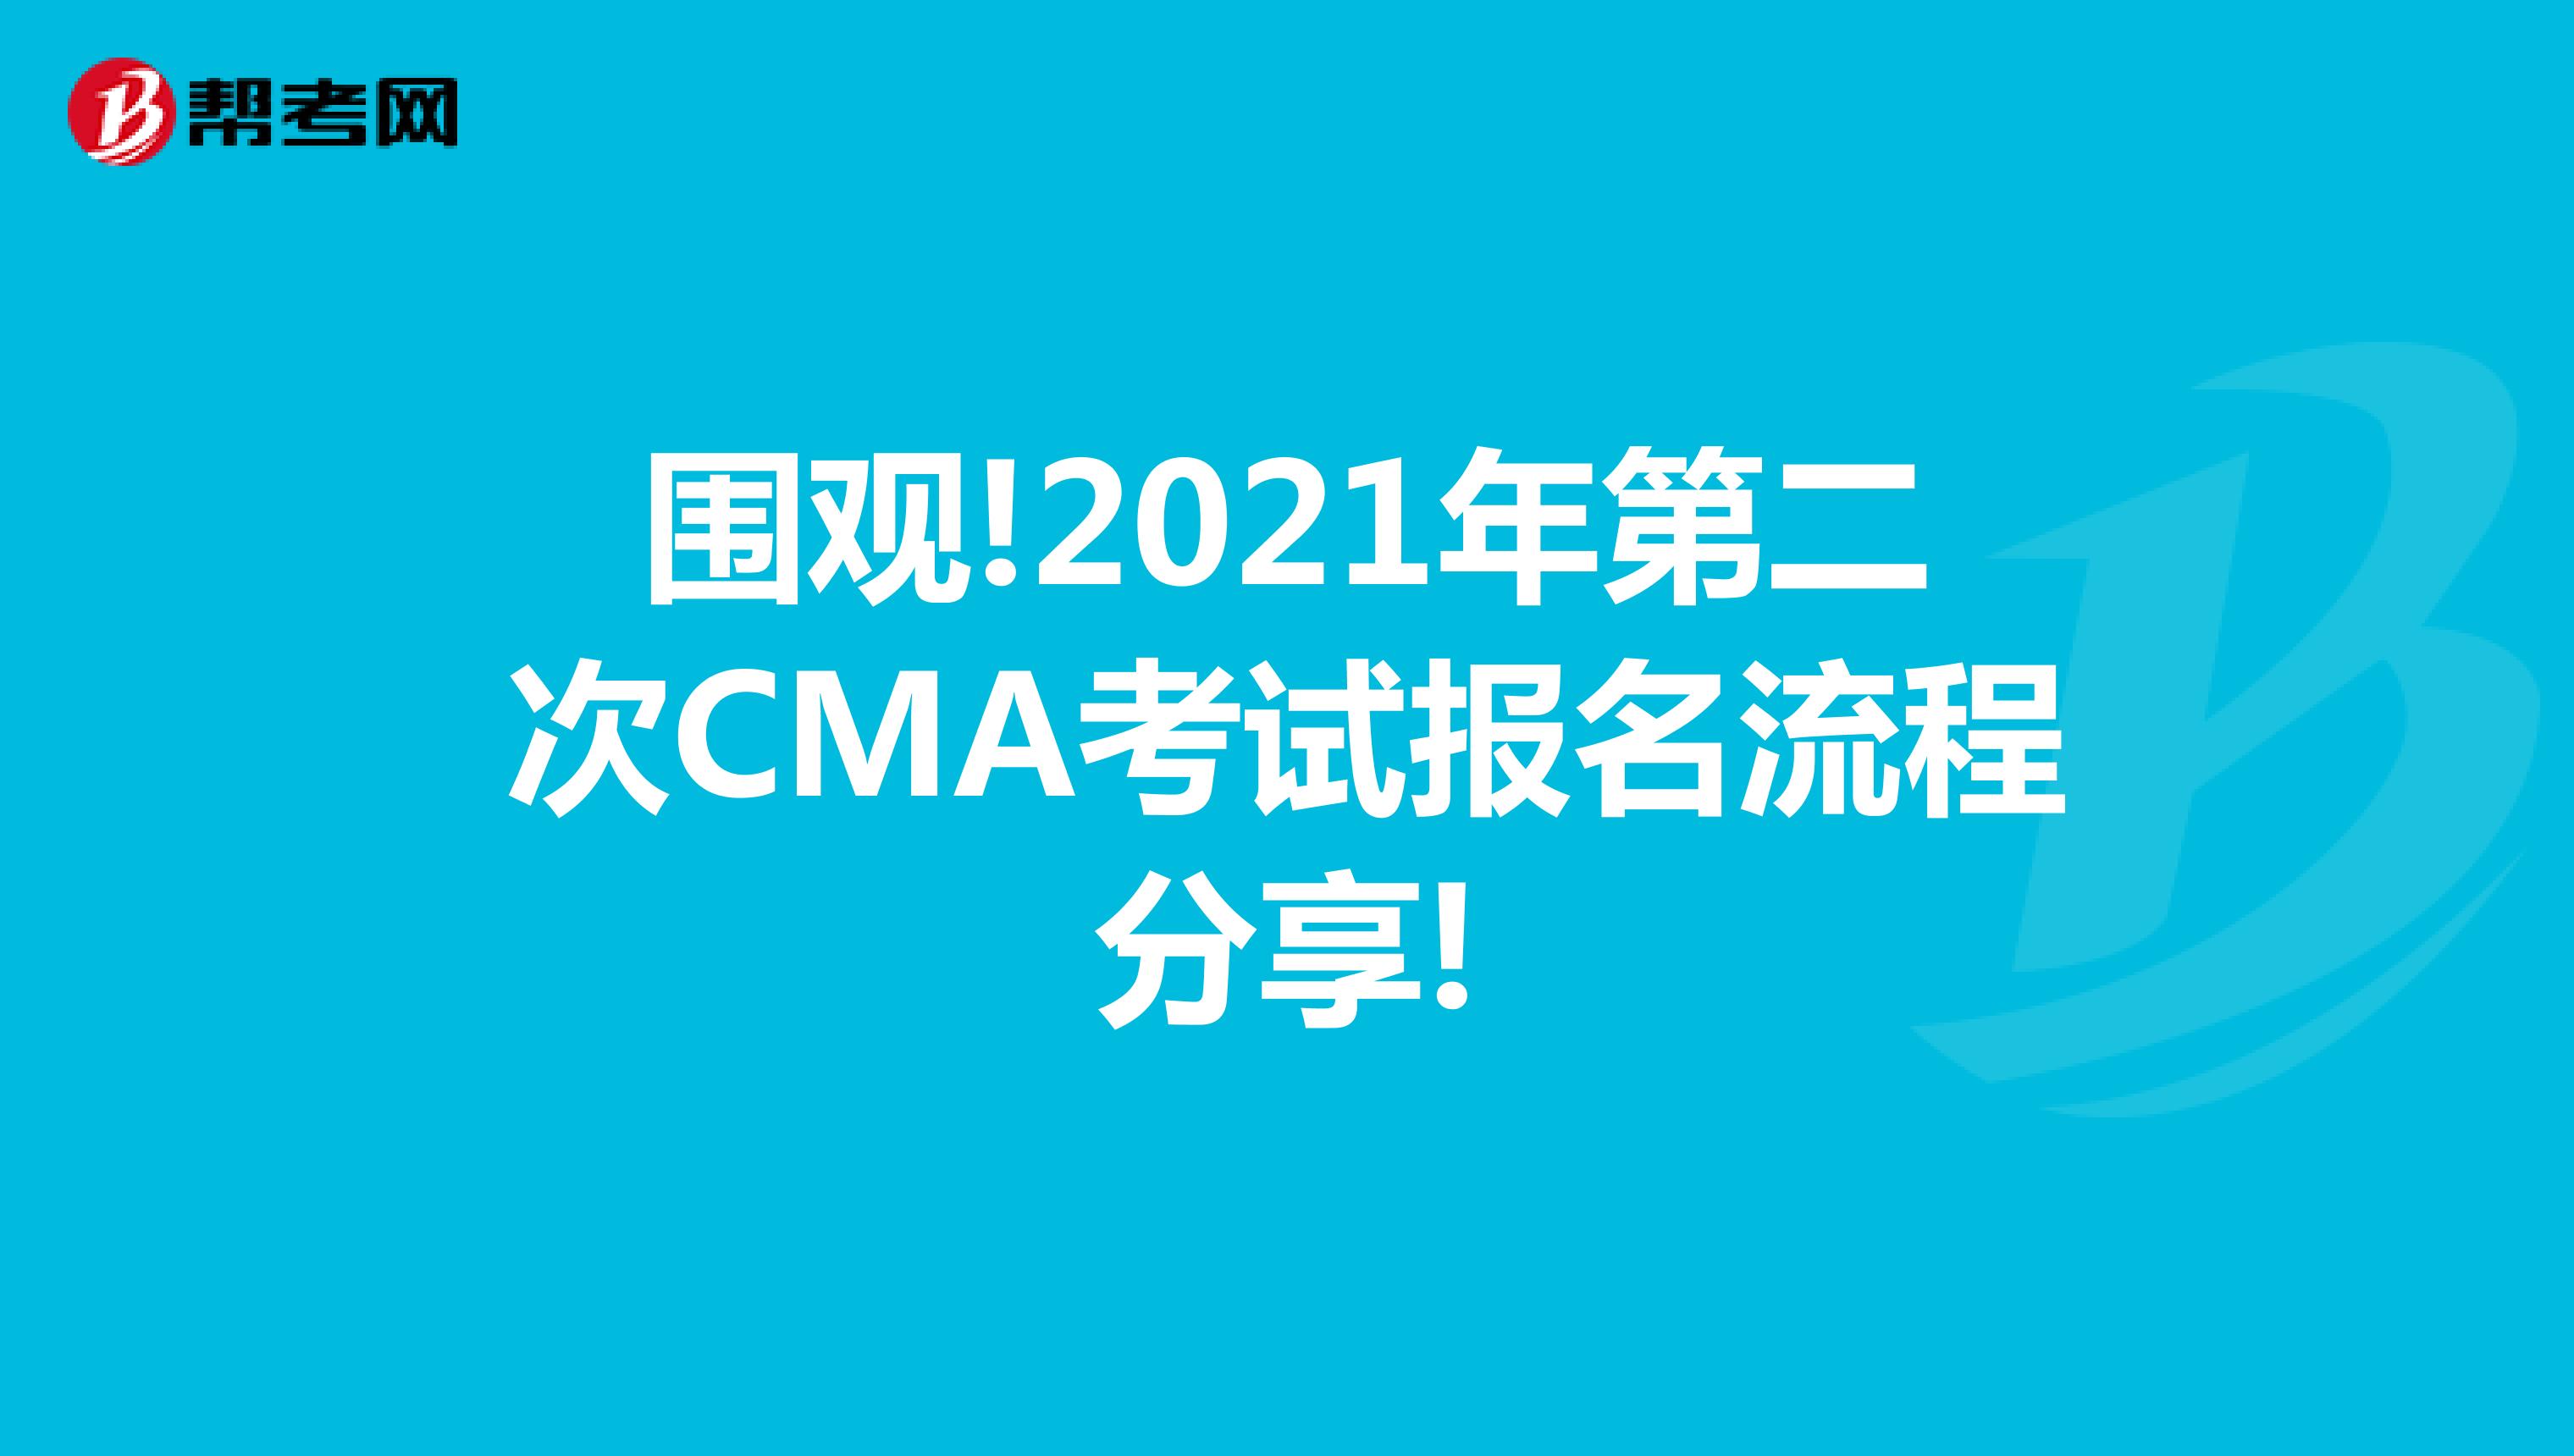 围观!2021年第二次CMA考试报名流程分享!